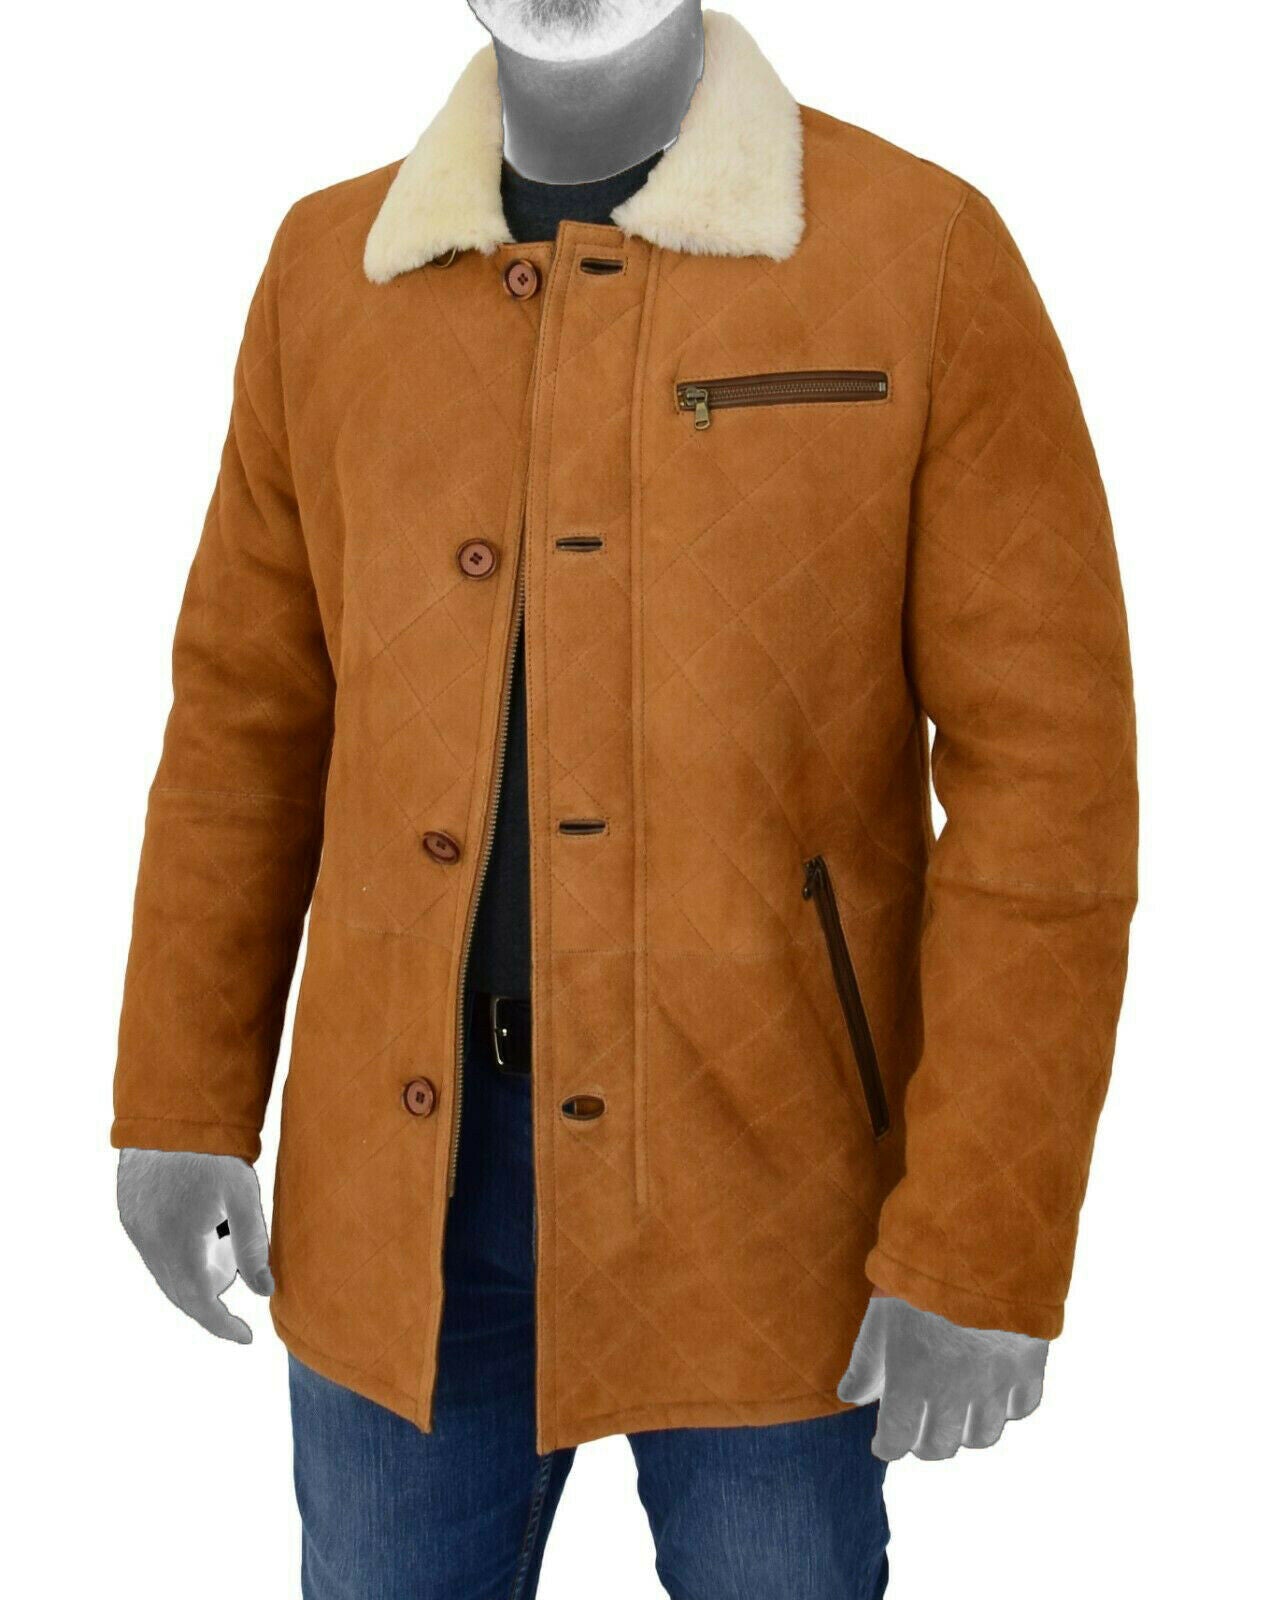 Spine Spark Men's Brown Soft Suede Leather Shearling Coat Jacket